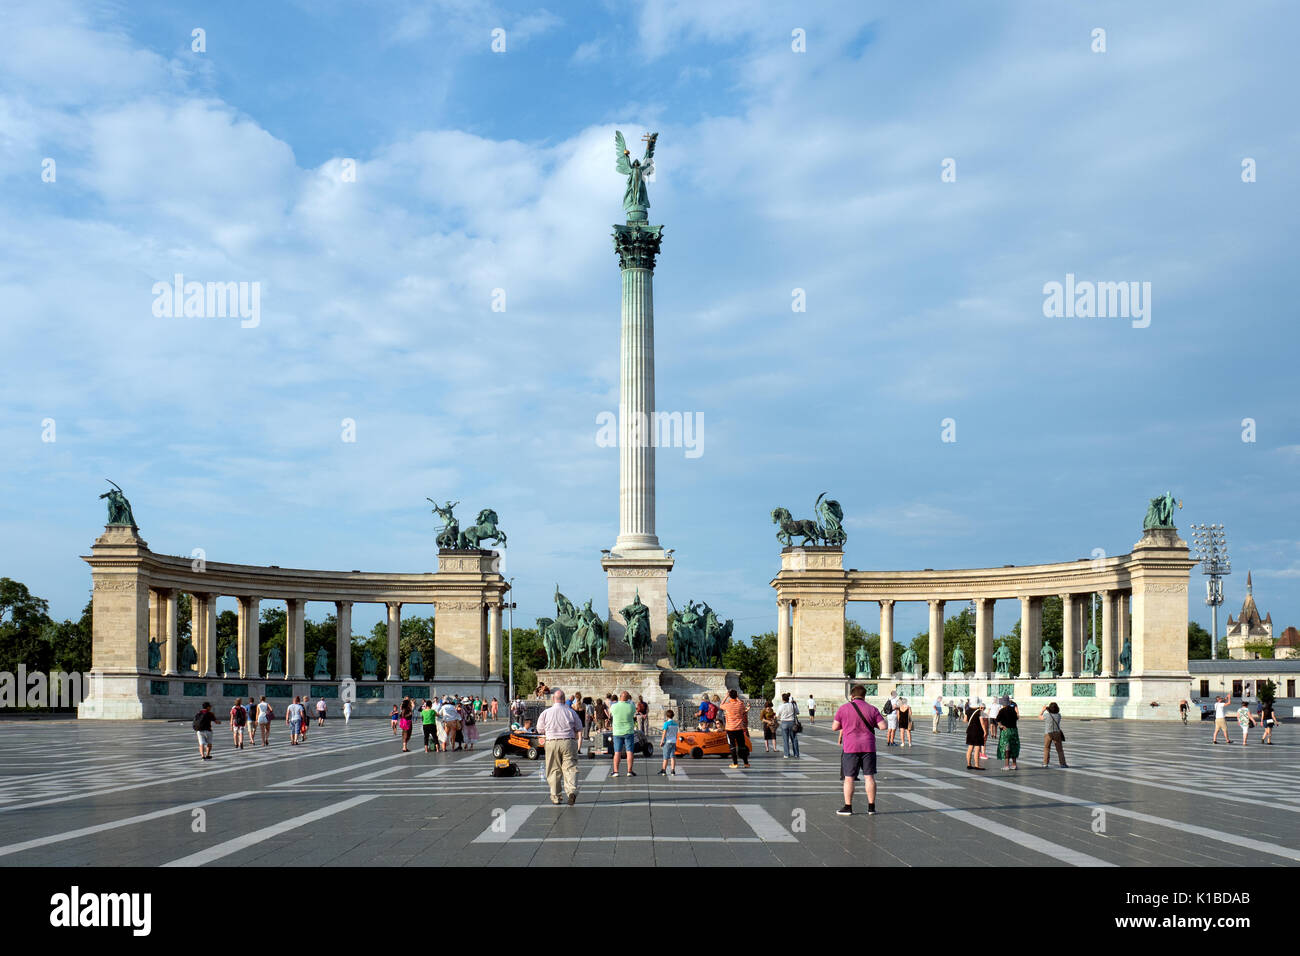 Budapest, Ungheria - 12 Giugno 2017 : persone che passeggiano nella piazza degli Eroi, che si trova alla fine della storica Andrassy Avenue Foto Stock